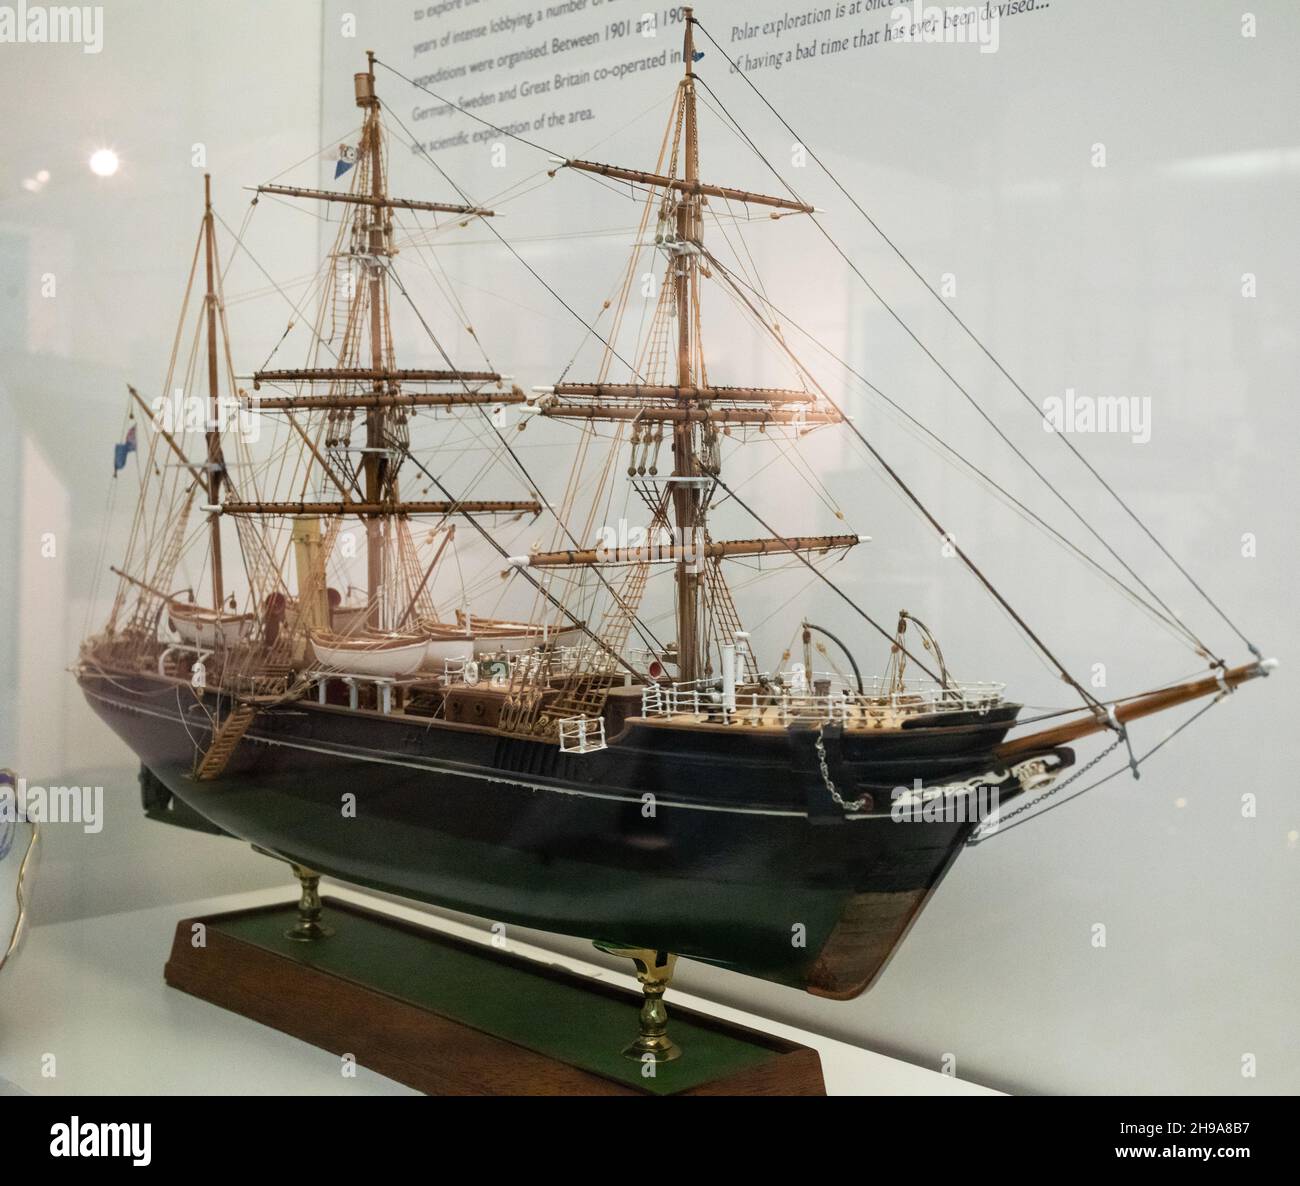 Un modèle à grande échelle de Discovery, le navire utilisé lors de l'expédition nationale britannique en Antarctique 1901-04 exposé au Polar Museum à Cambridge au Royaume-Uni. Banque D'Images